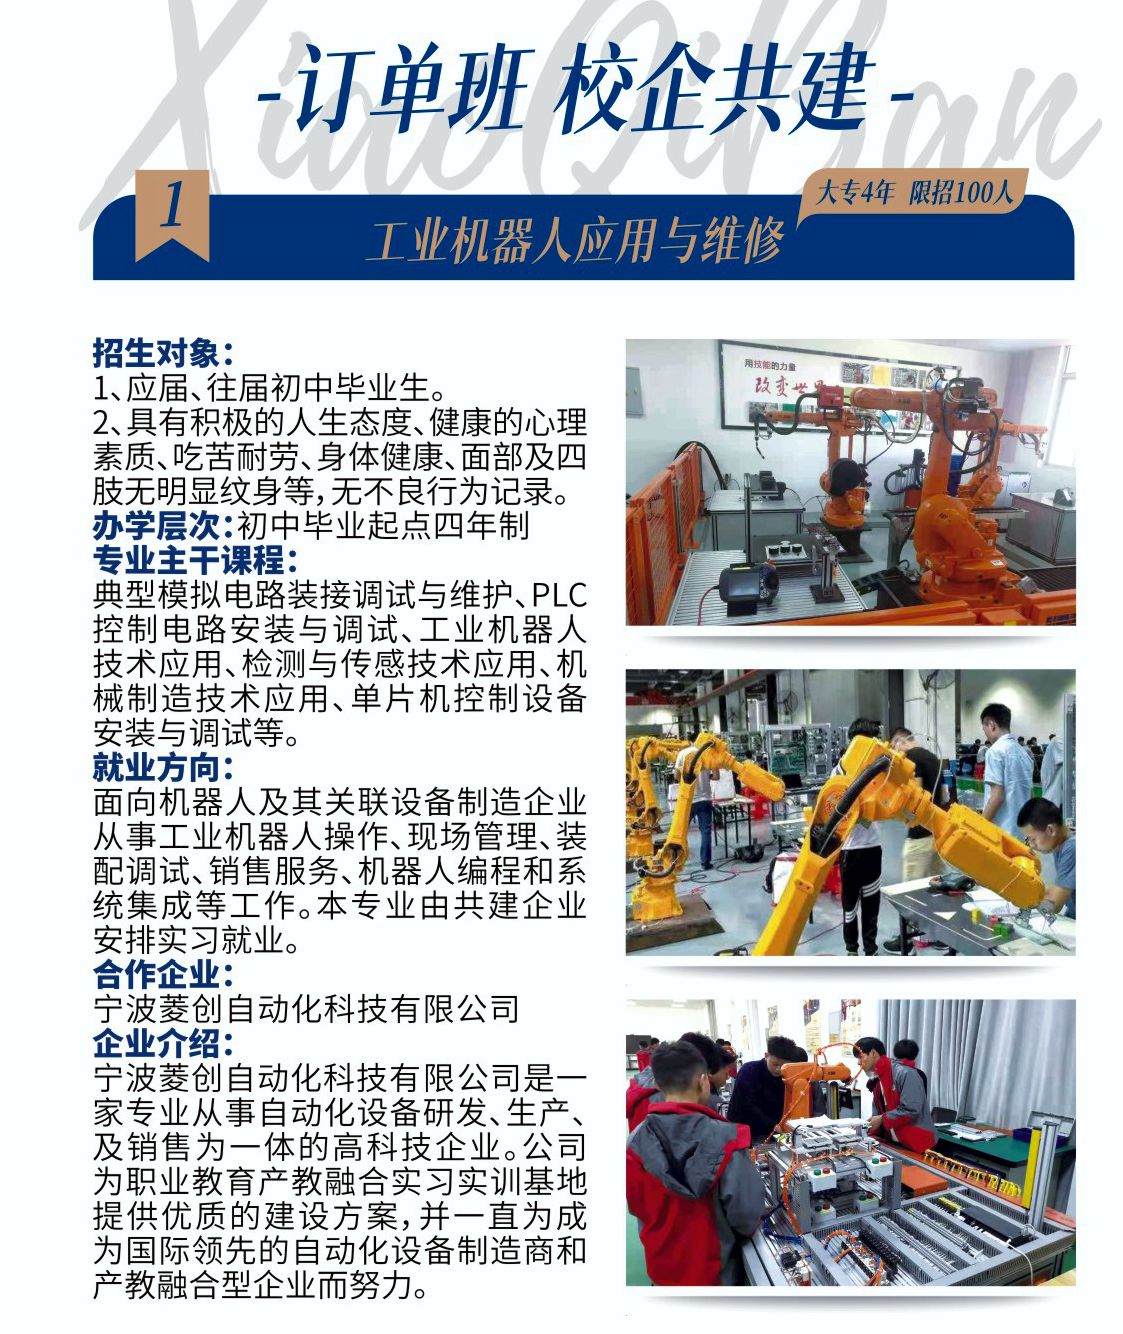 莆田市理工技术学校工业机器人应用与维修